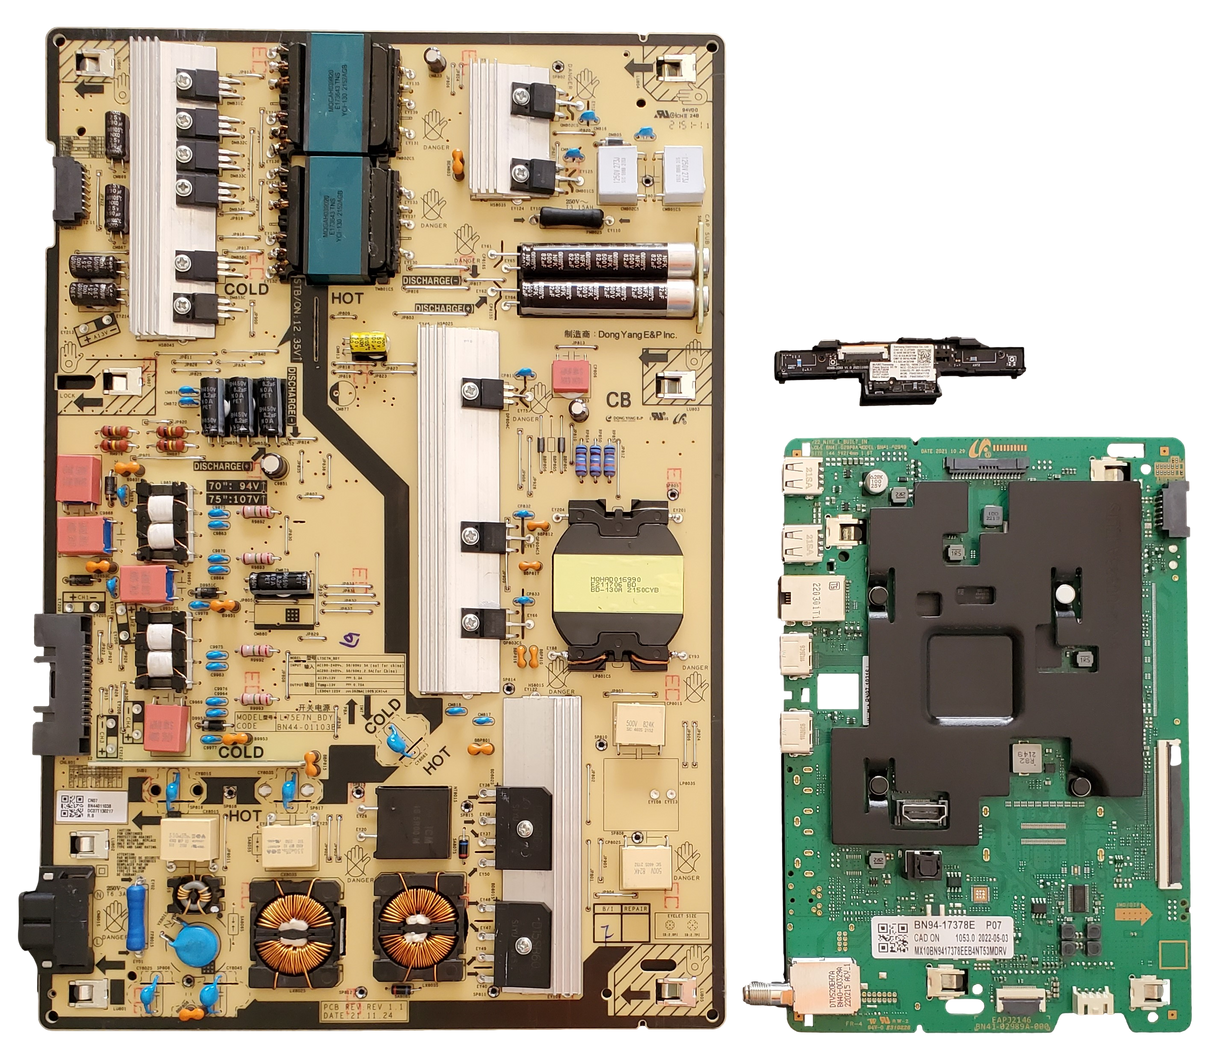 QN75Q60BDFXZA Samsung TV Repair Kit, BN94-17378E Main Board, BN44-01103B Power Supply, BN59-01403A Wi-Fi Board, QN75Q60BDFXZA